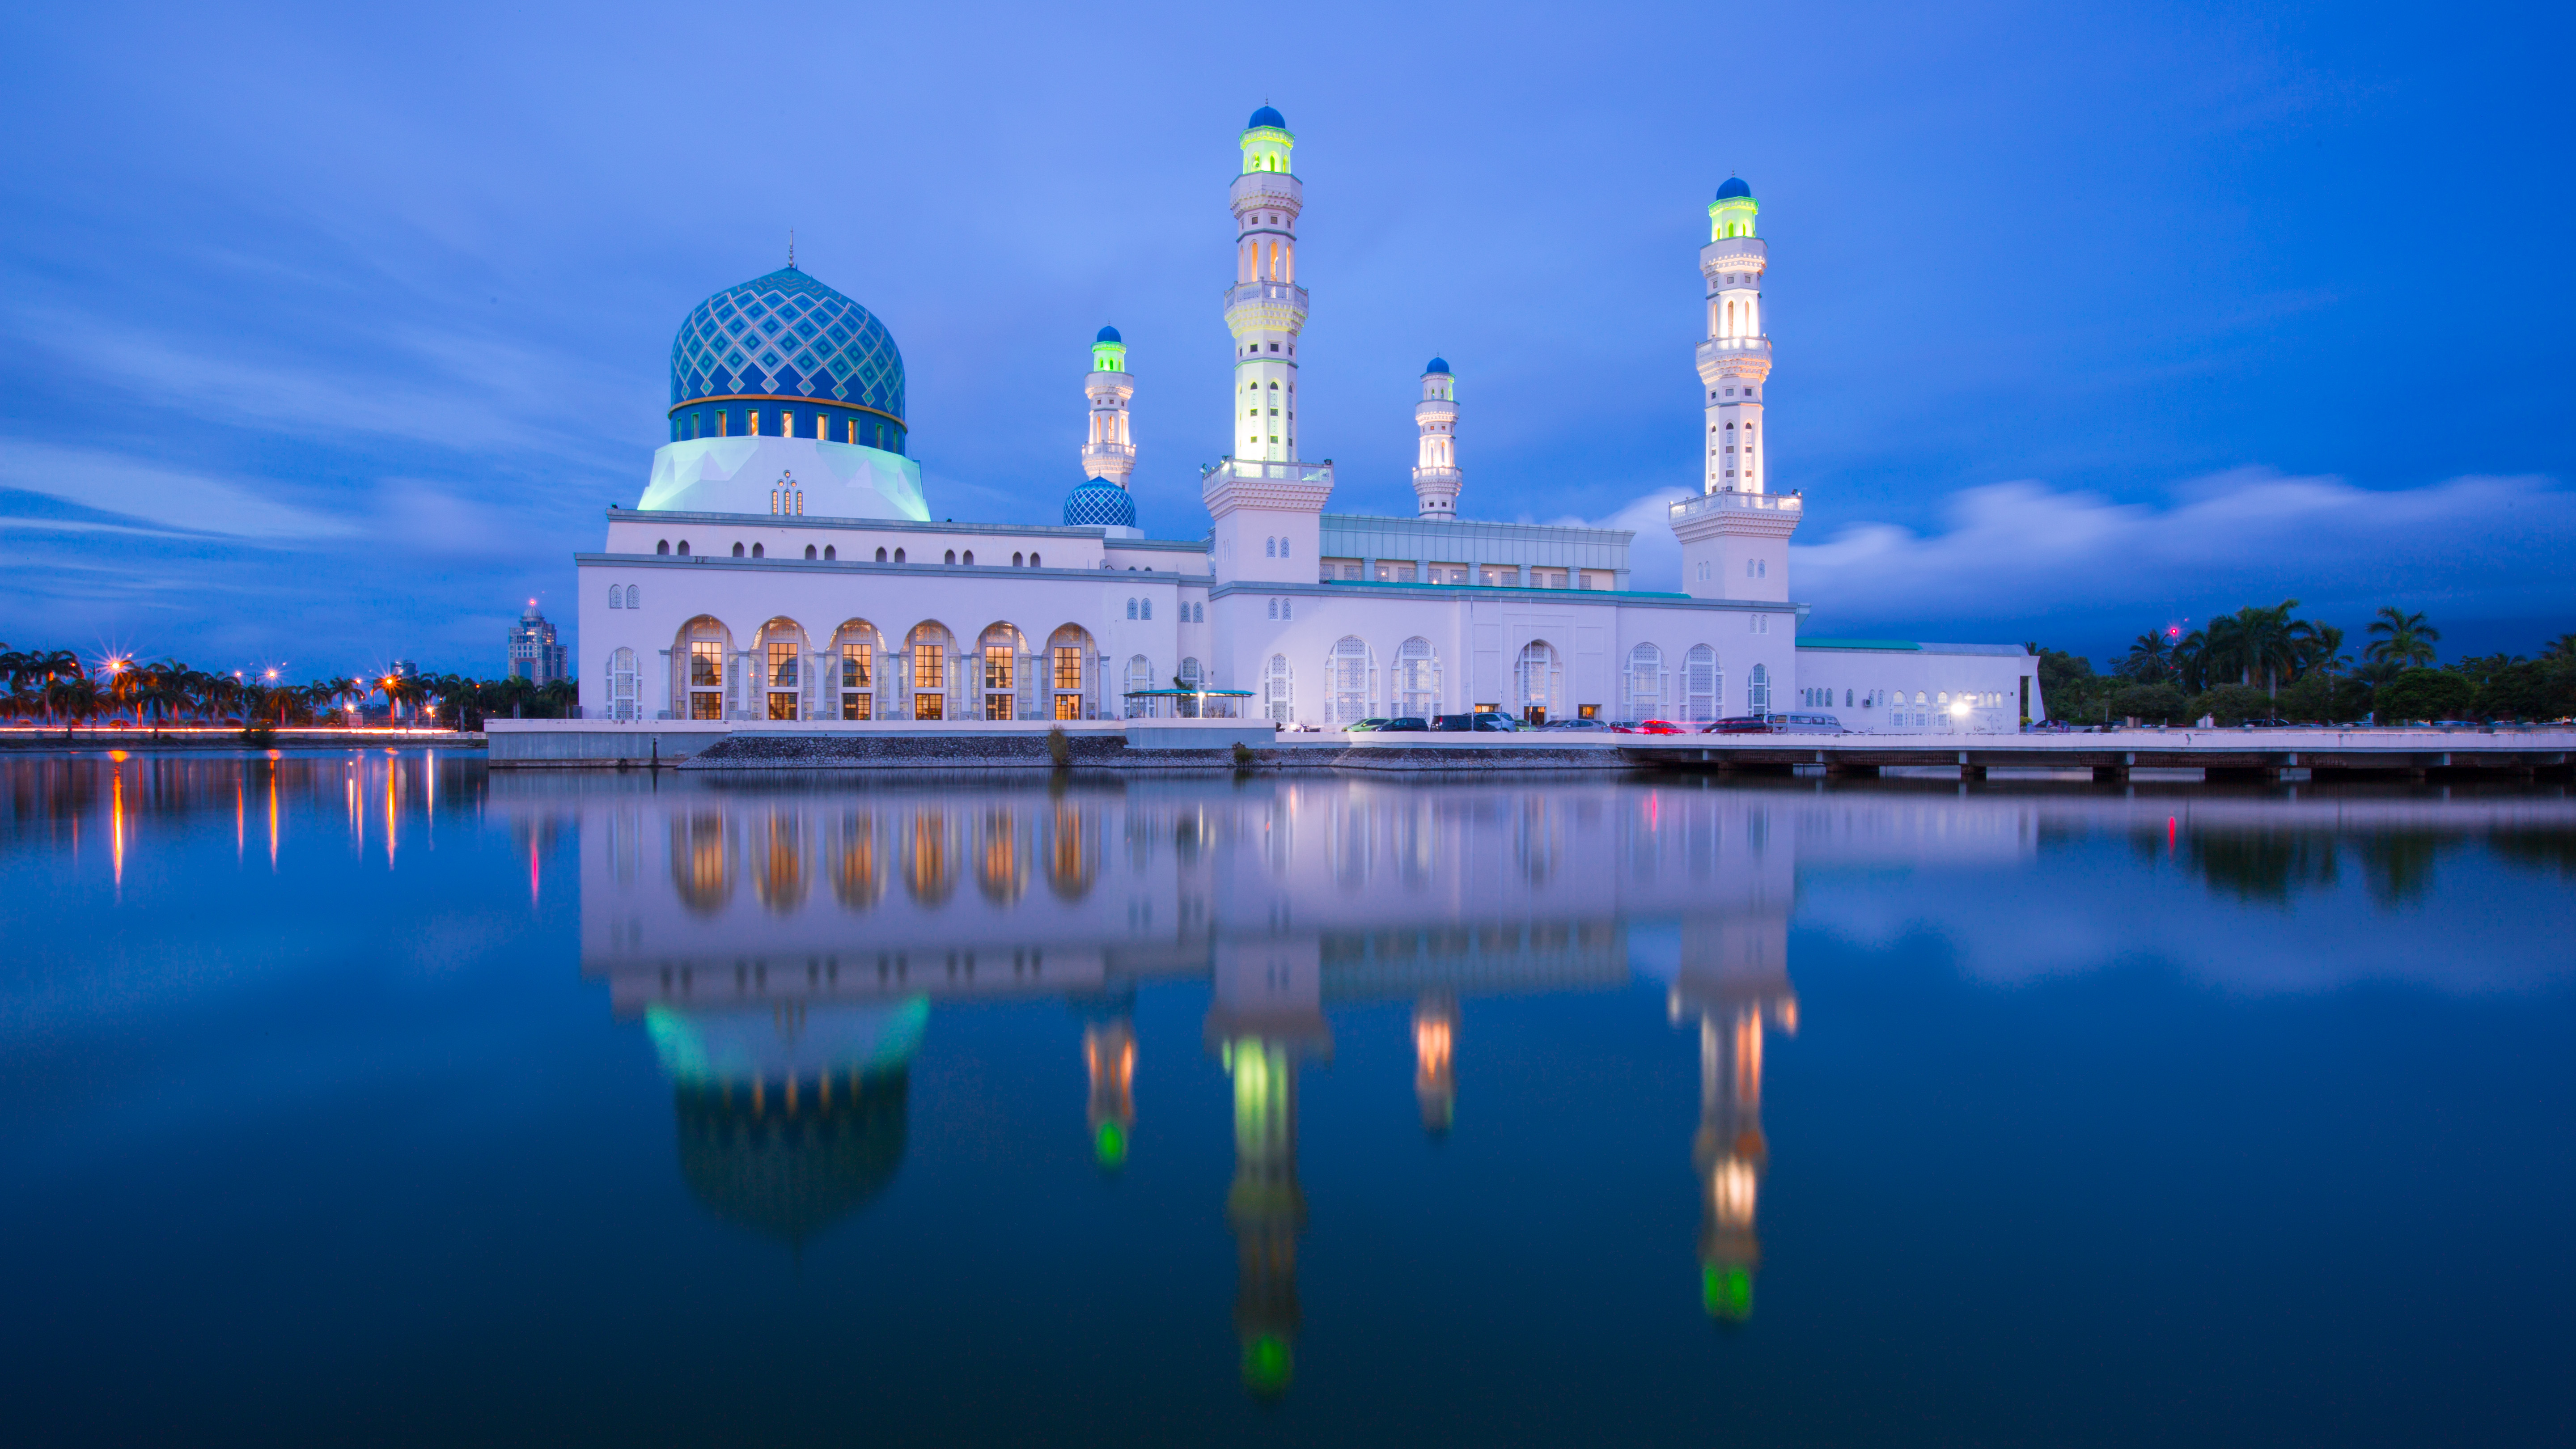 Kota Kinabalu City Mosque In Kota Kinabalu Sabah Malaysia 4k Ultra Hd